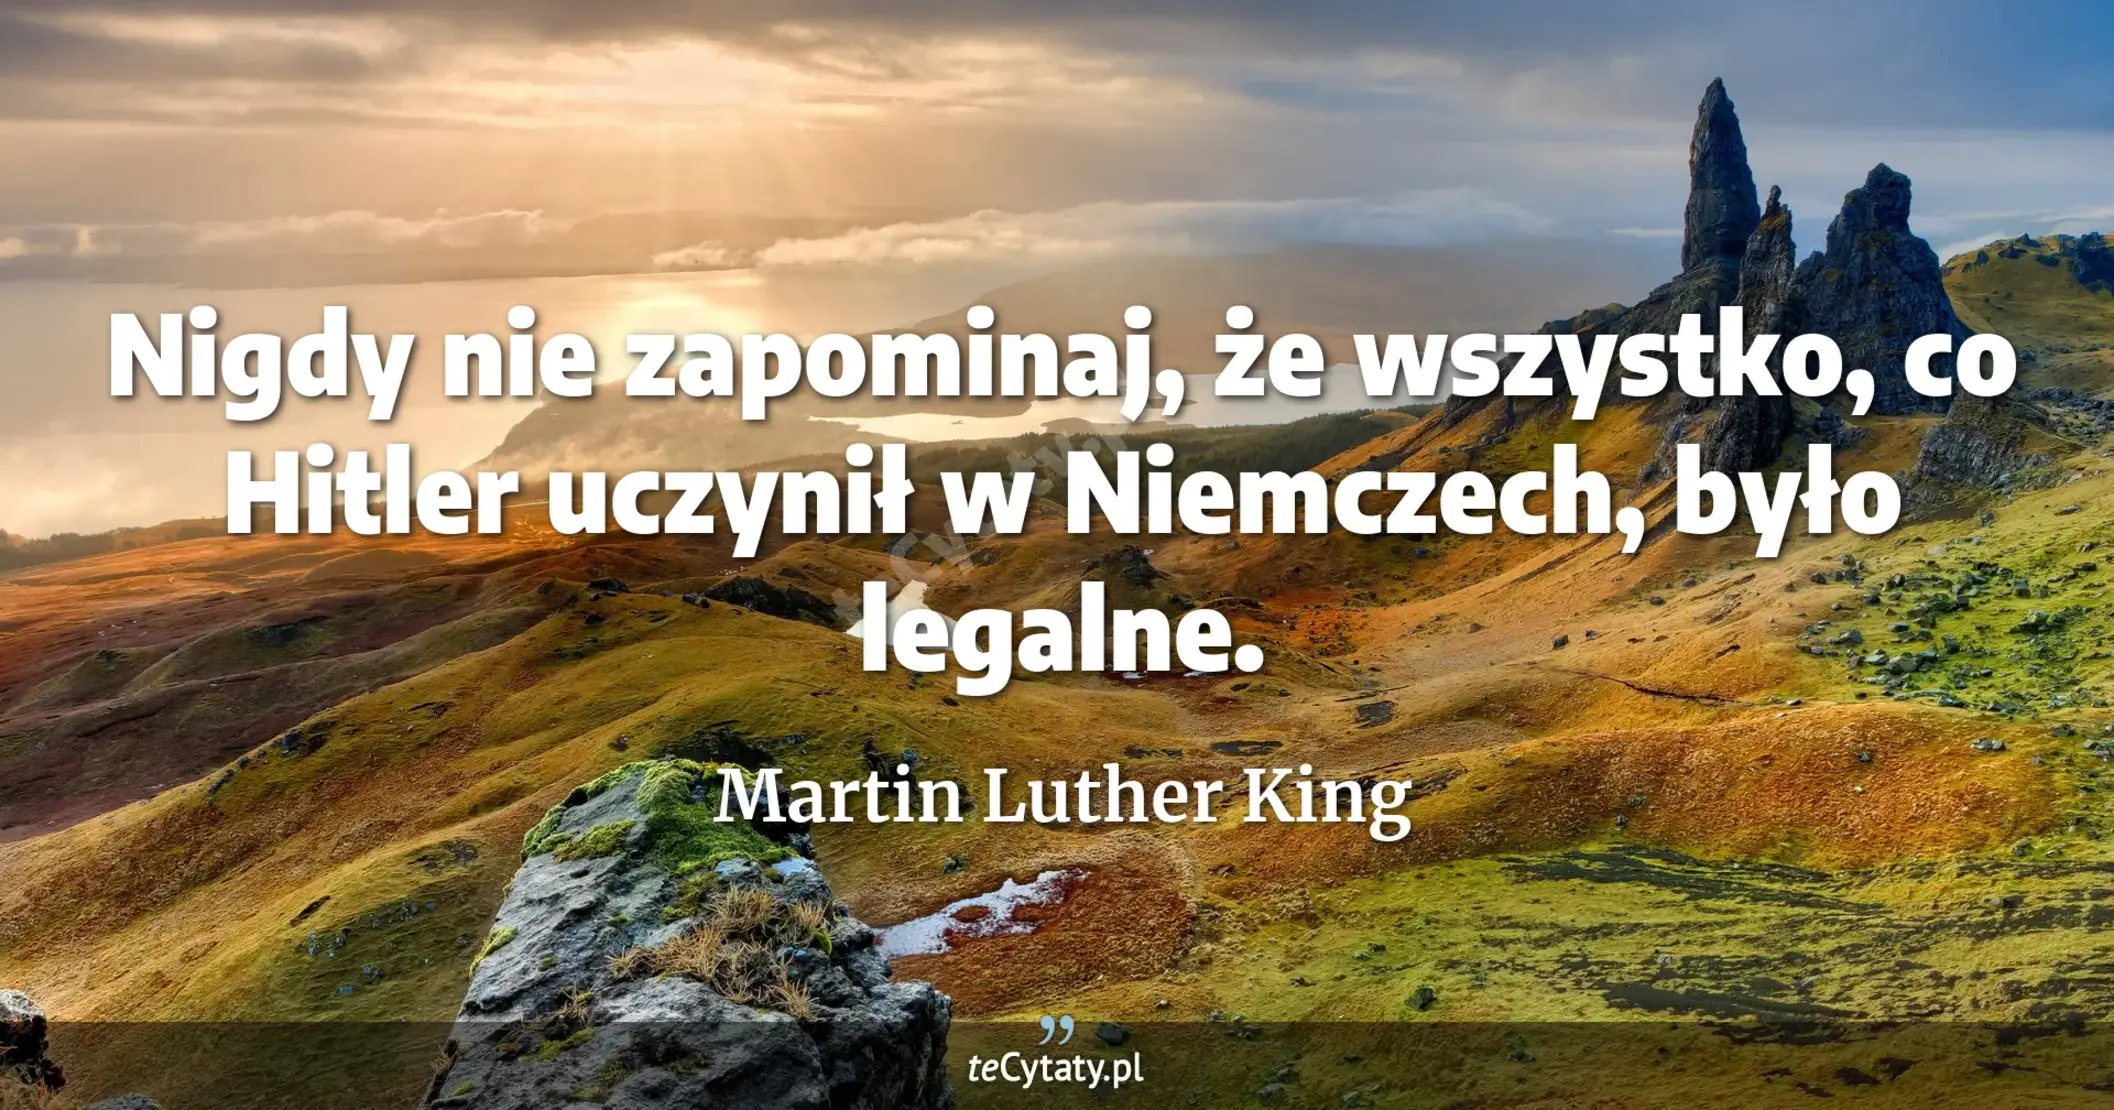 Nigdy nie zapominaj, że wszystko, co Hitler uczynił w Niemczech, było legalne. - Martin Luther King